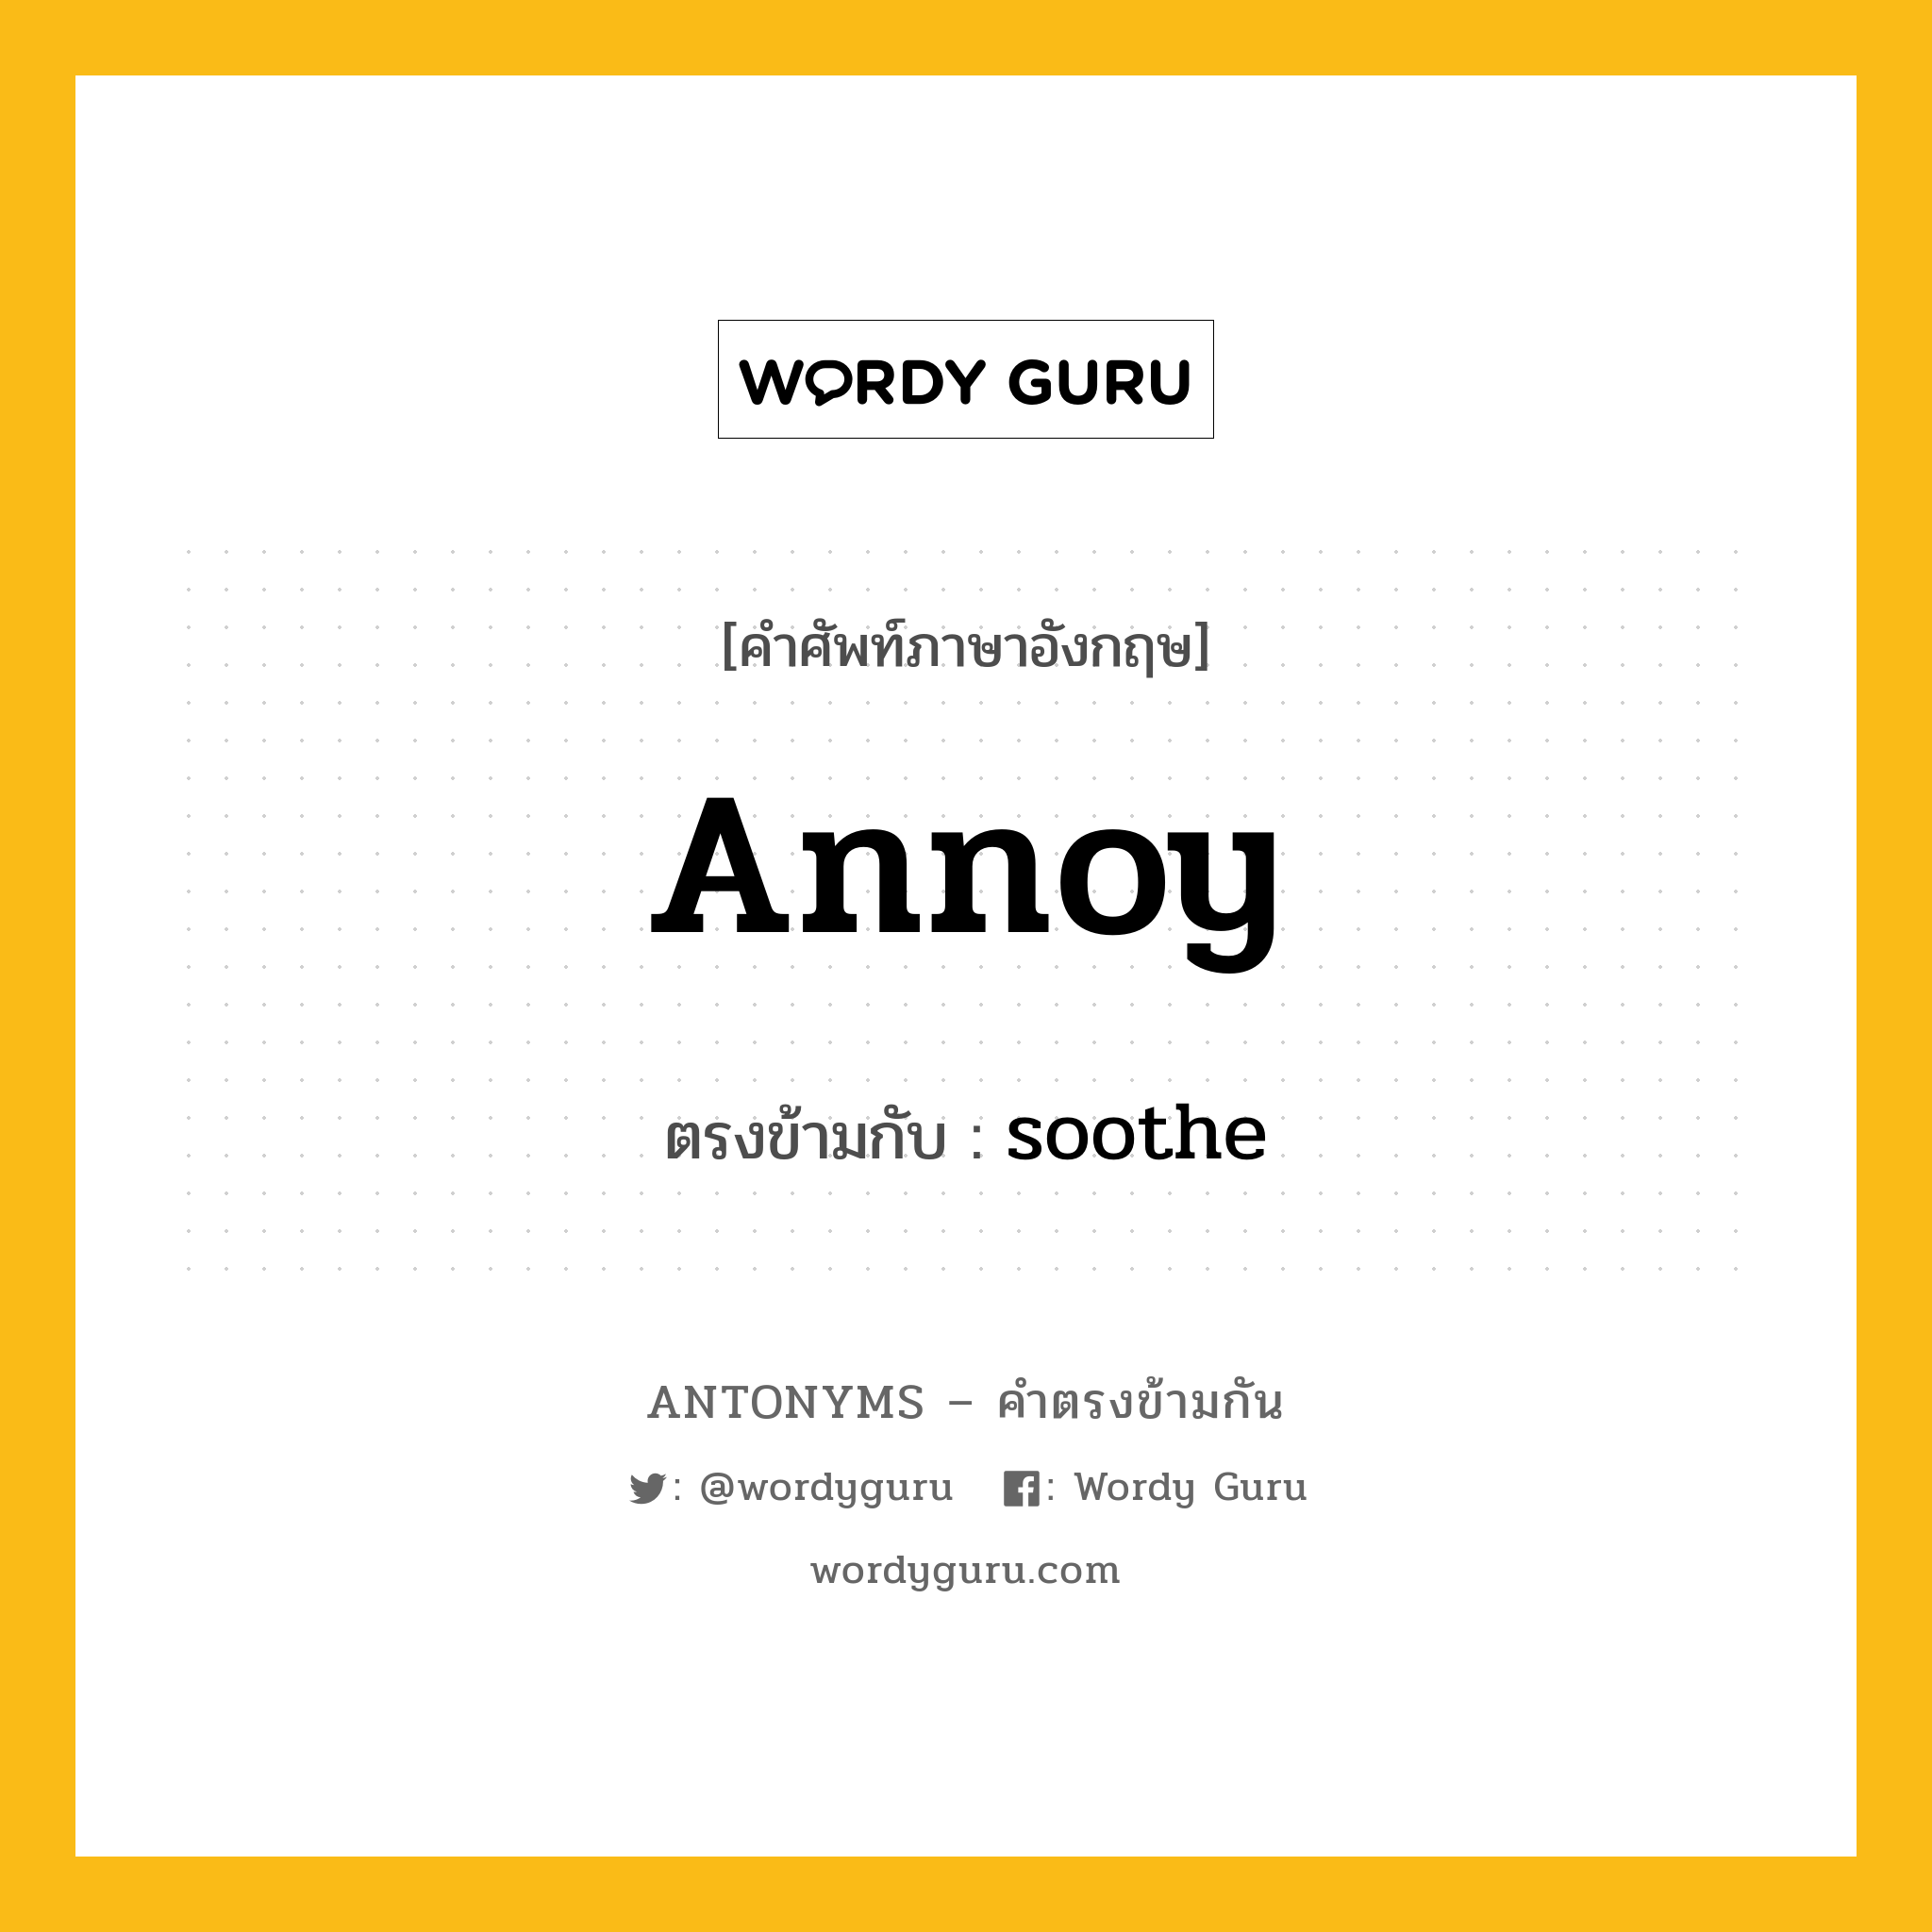 annoy เป็นคำตรงข้ามกับคำไหนบ้าง?, คำศัพท์ภาษาอังกฤษ annoy ตรงข้ามกับ soothe หมวด soothe